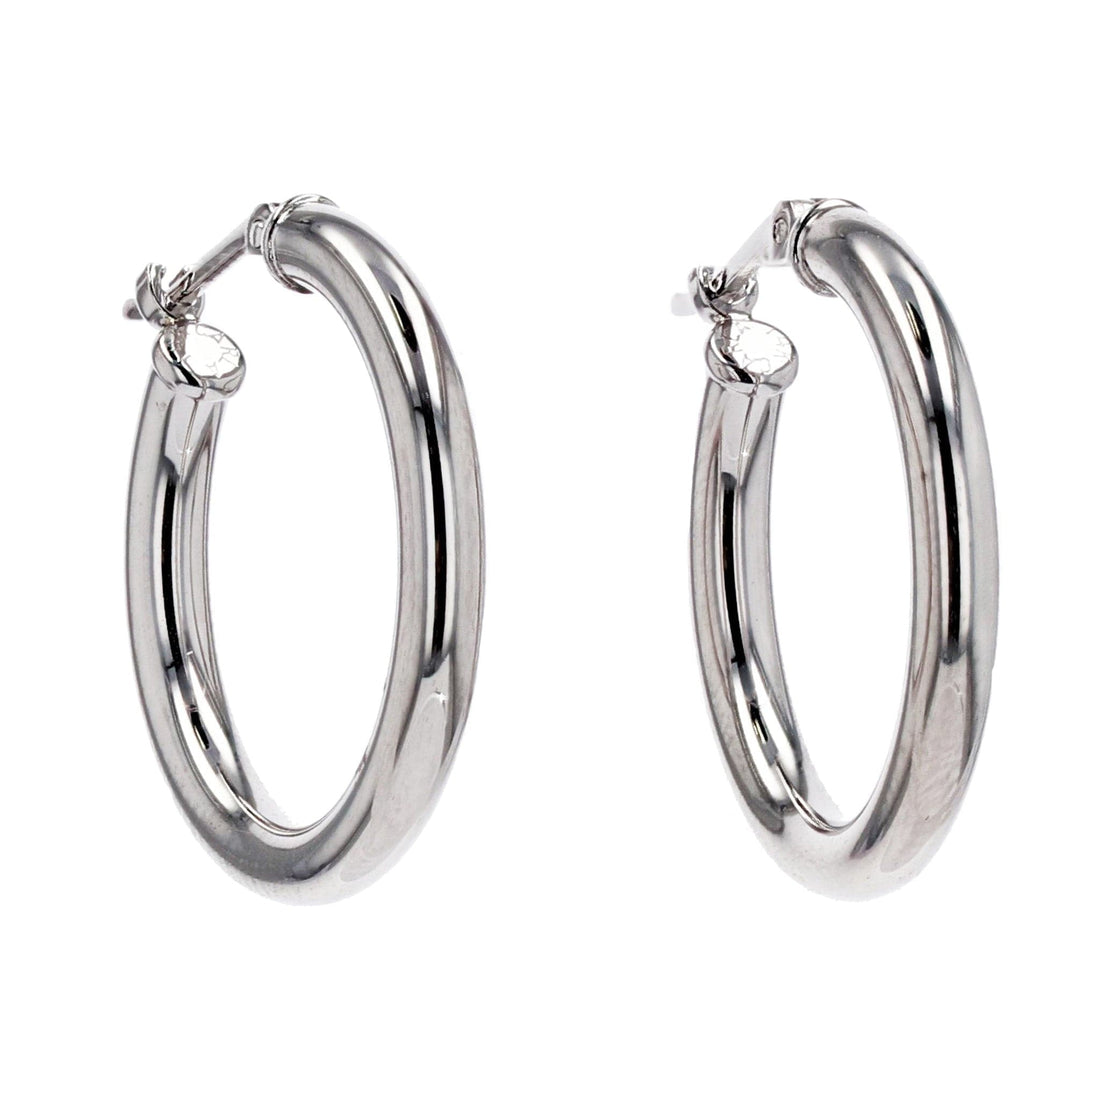 Silver Hoop Earrings, Large Hoop Earrings, Silver Hoops, Big Thick Hoops  Simple Women Earrings, Silver 2 Big Snap Circle Hoop Jewelry Gift 